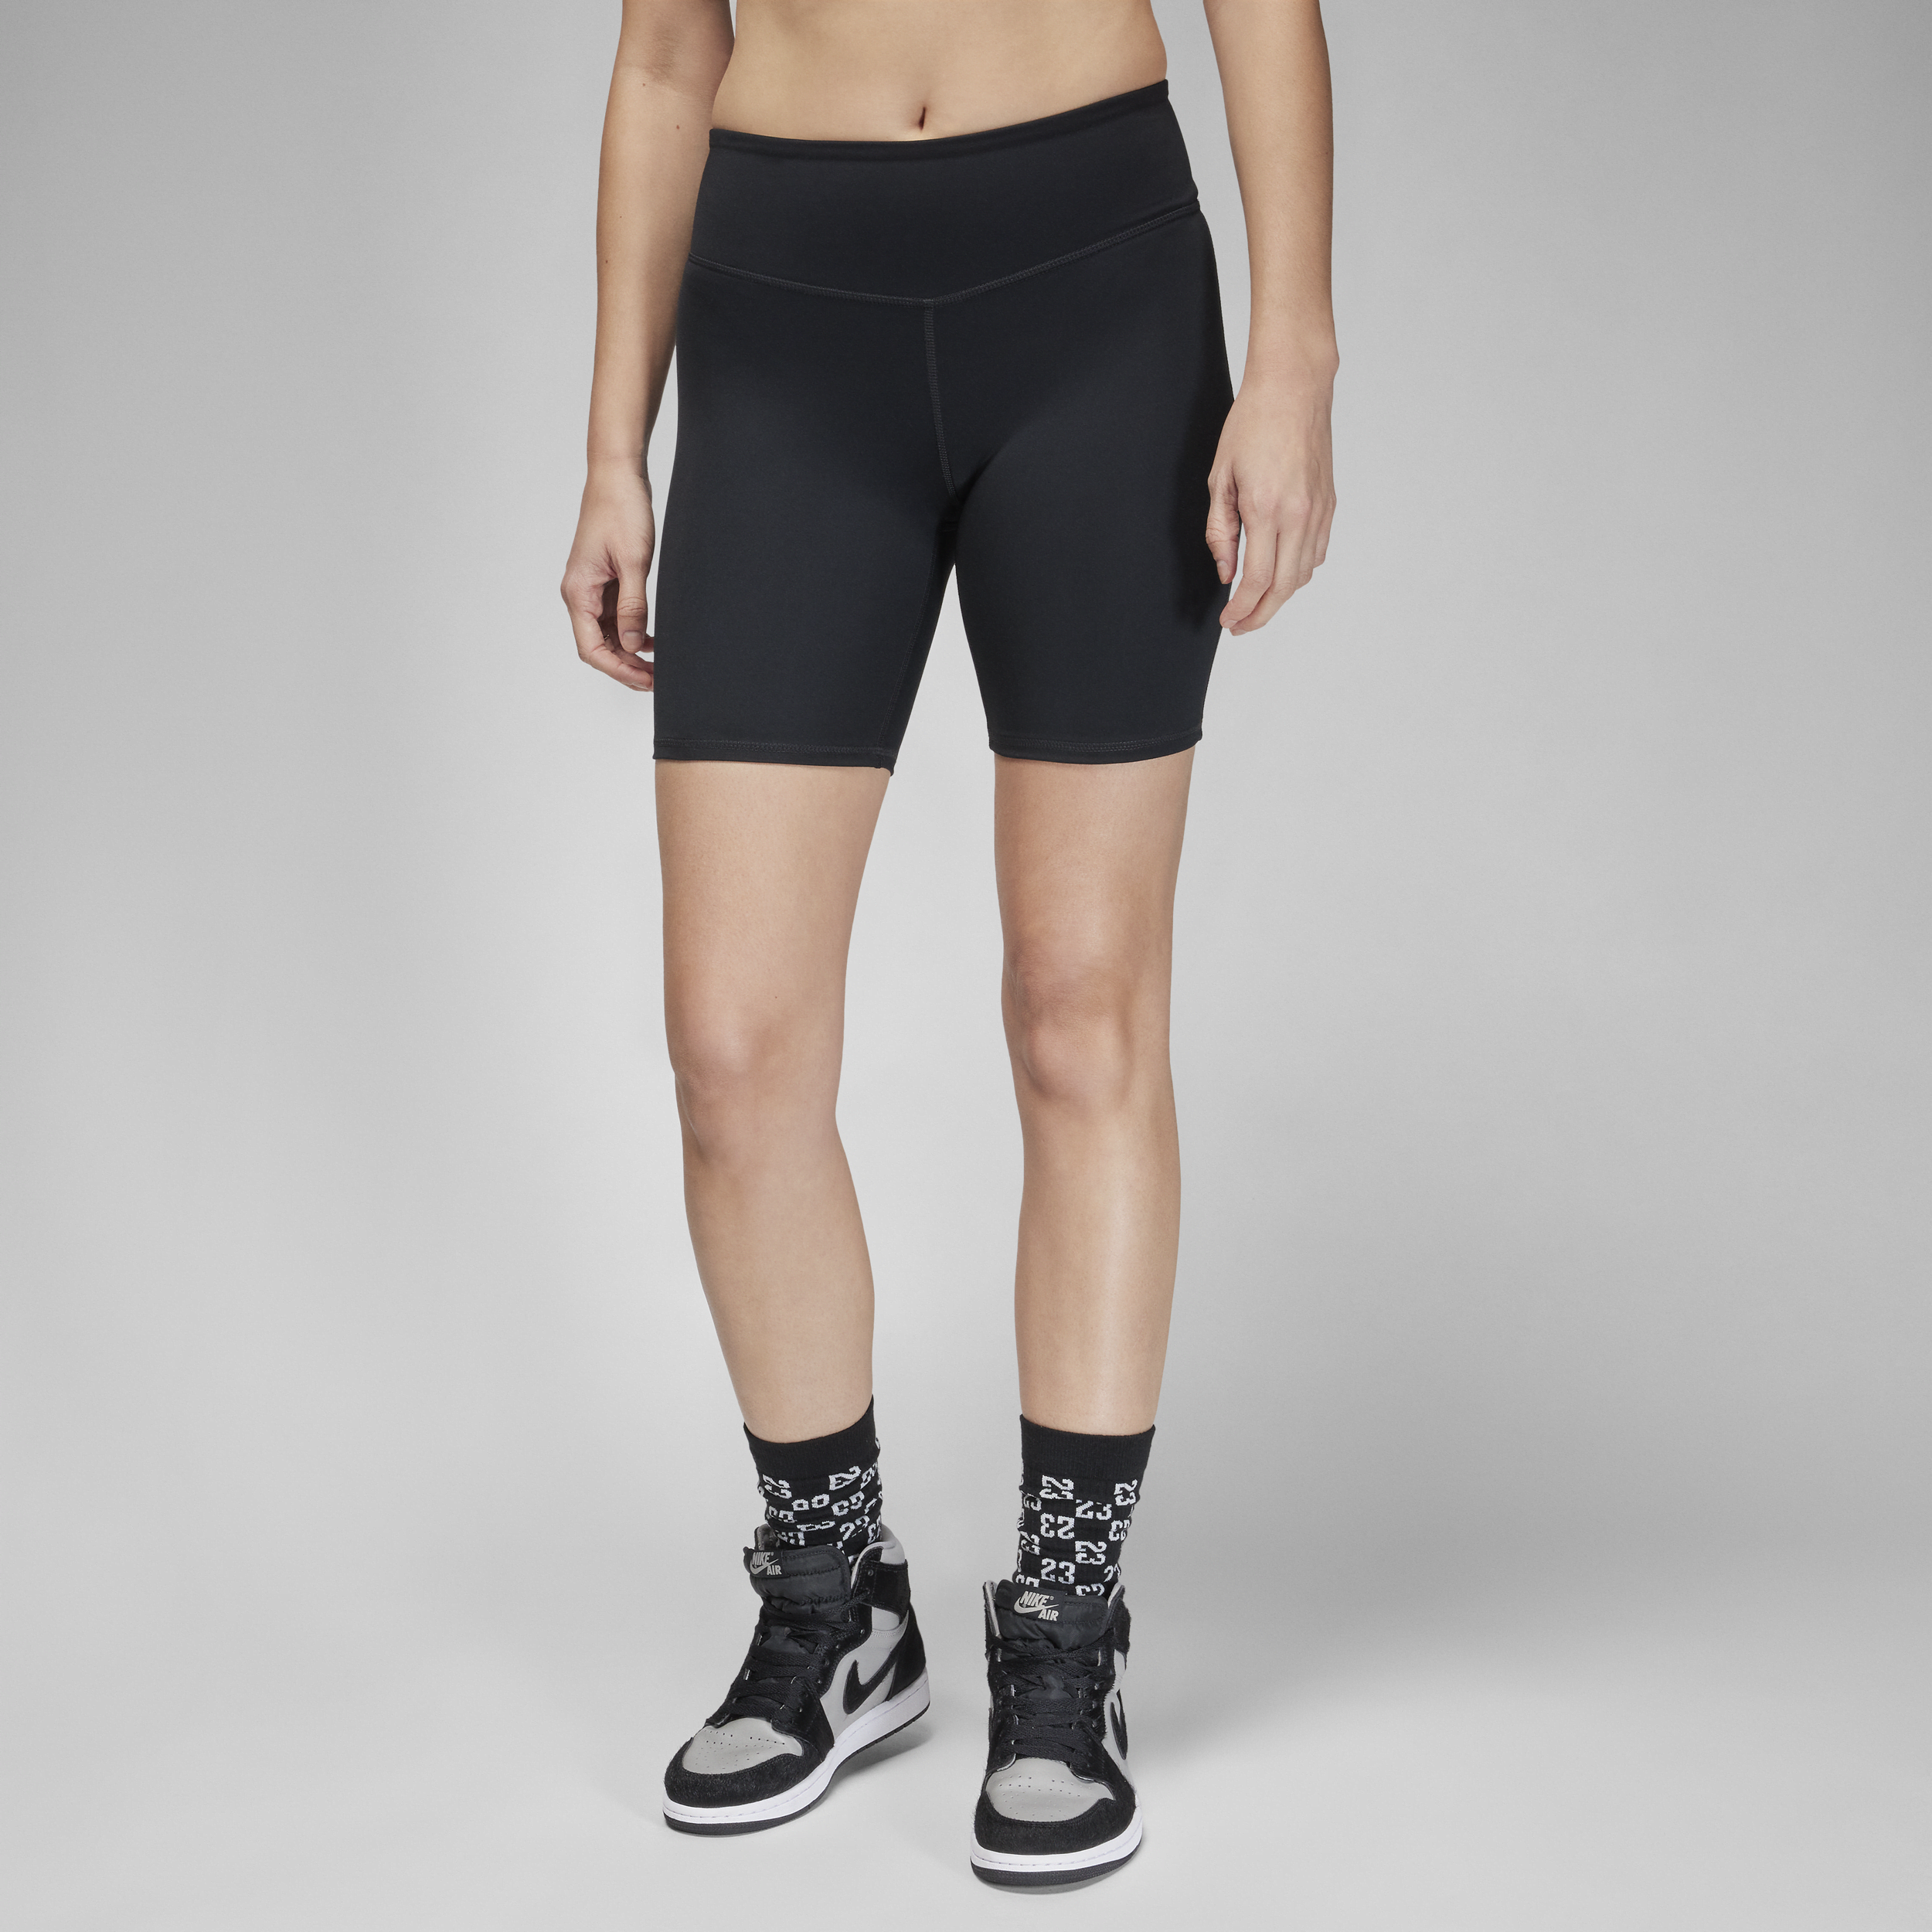 Jordan Sport-cykelshorts (18 cm) med høj talje til kvinder - sort